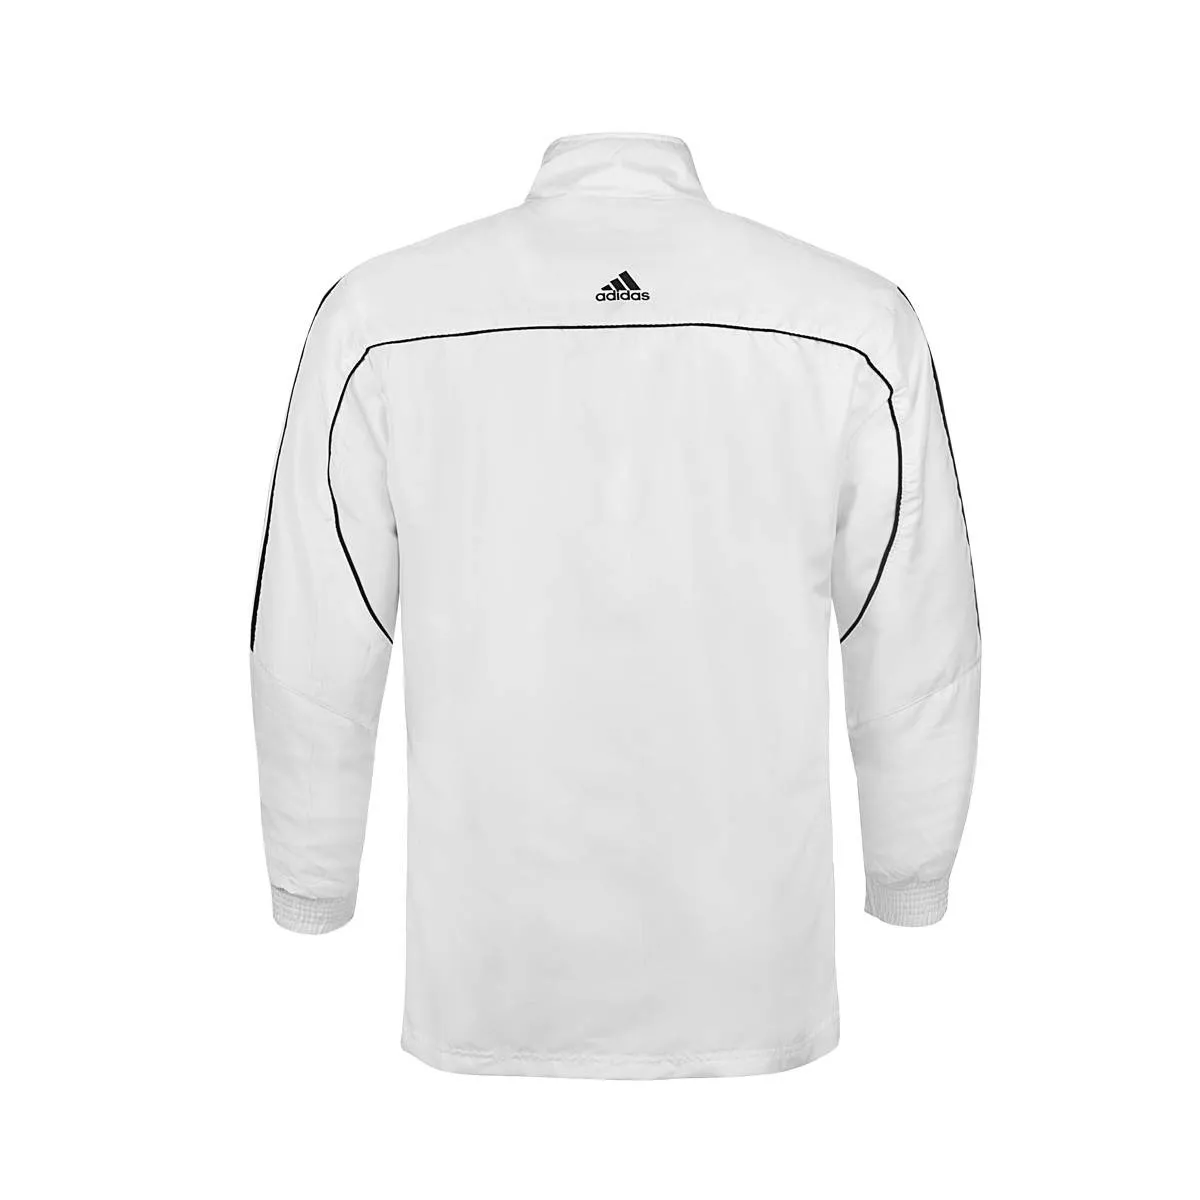 adidas tracksuit jacket white